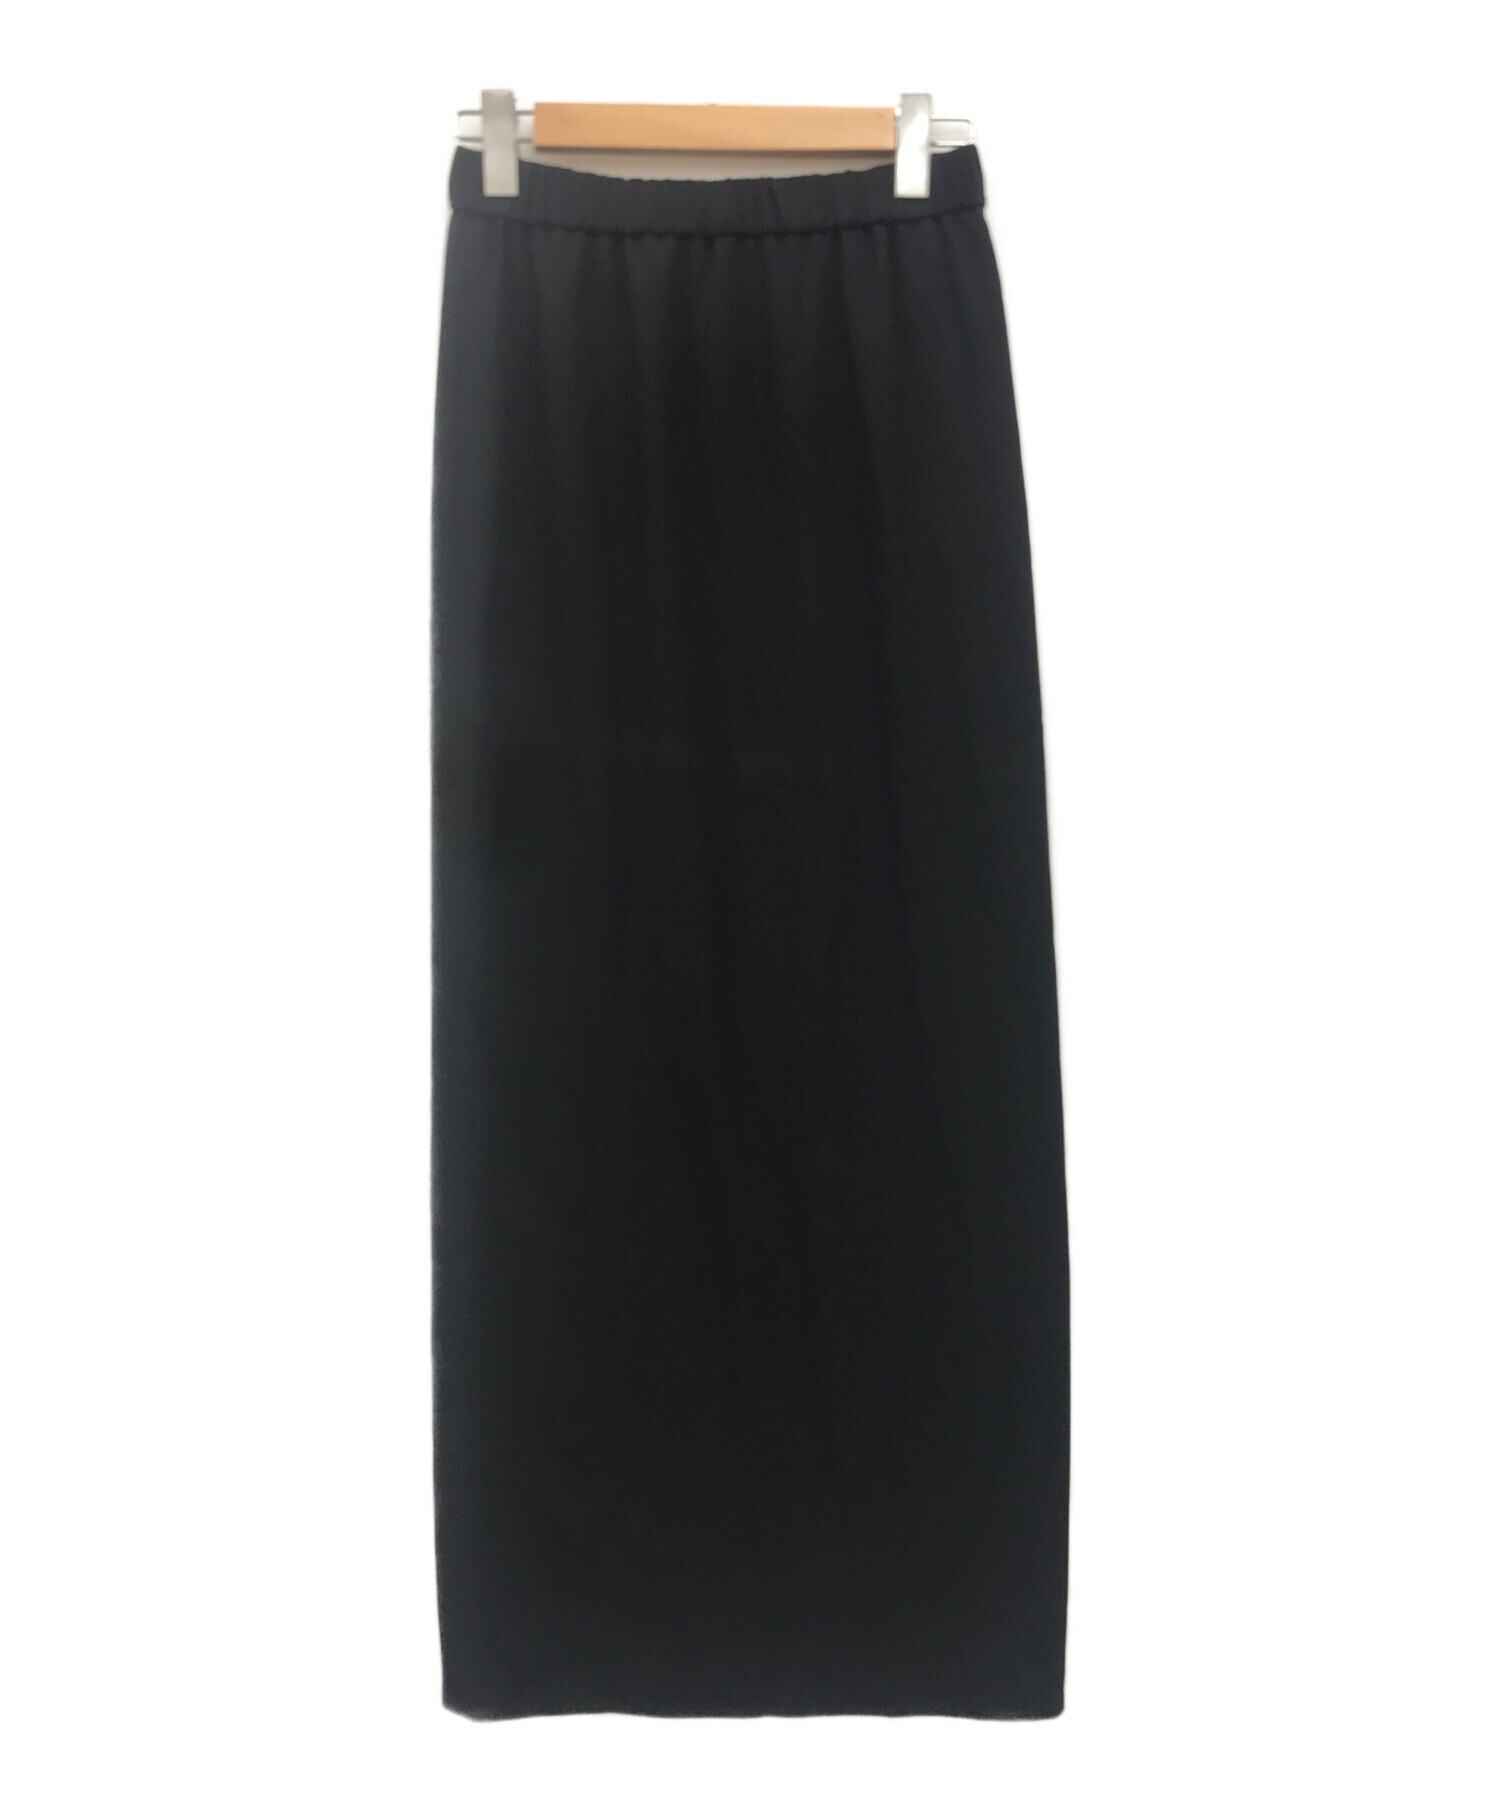 AP STUDIO (エーピーストゥディオ) ウエストゴムマキシスカート ブラック サイズ:free 未使用品